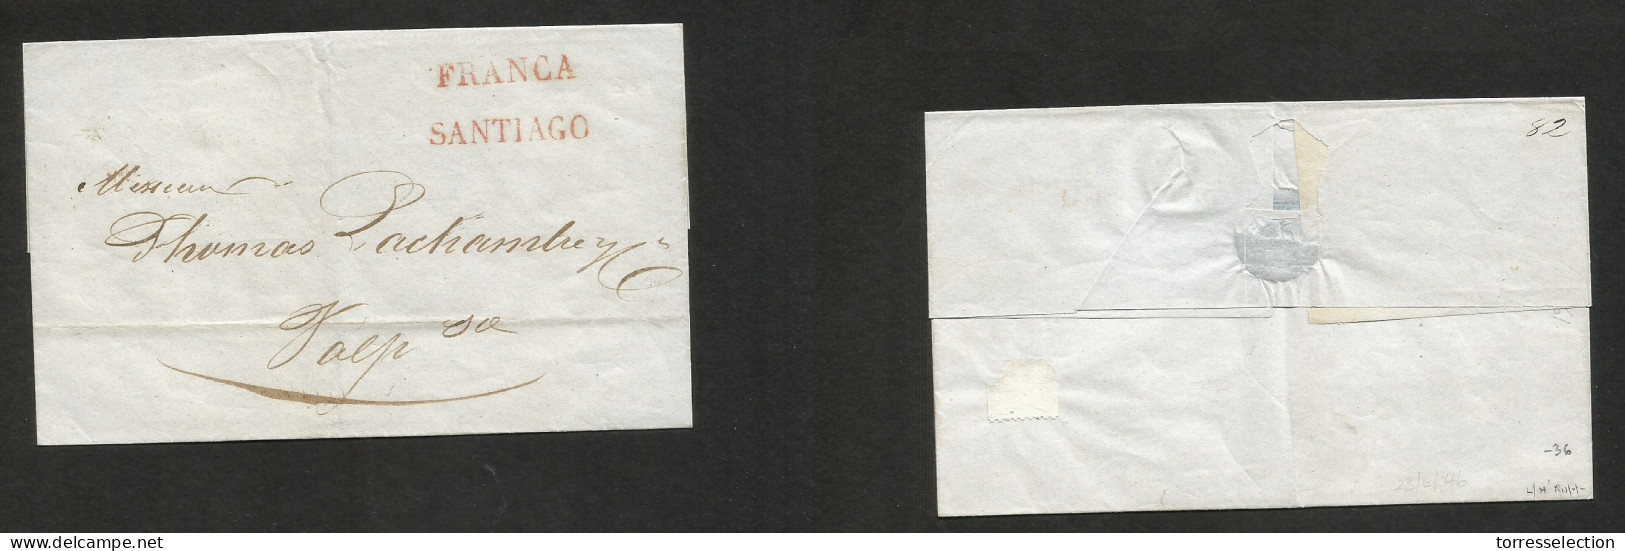 CHILE. 1846 (29 June) Stgo - Valp. E. Stline "FRANCIA" + "SANTIAGO" VF Item Condition. SALE. - Chile